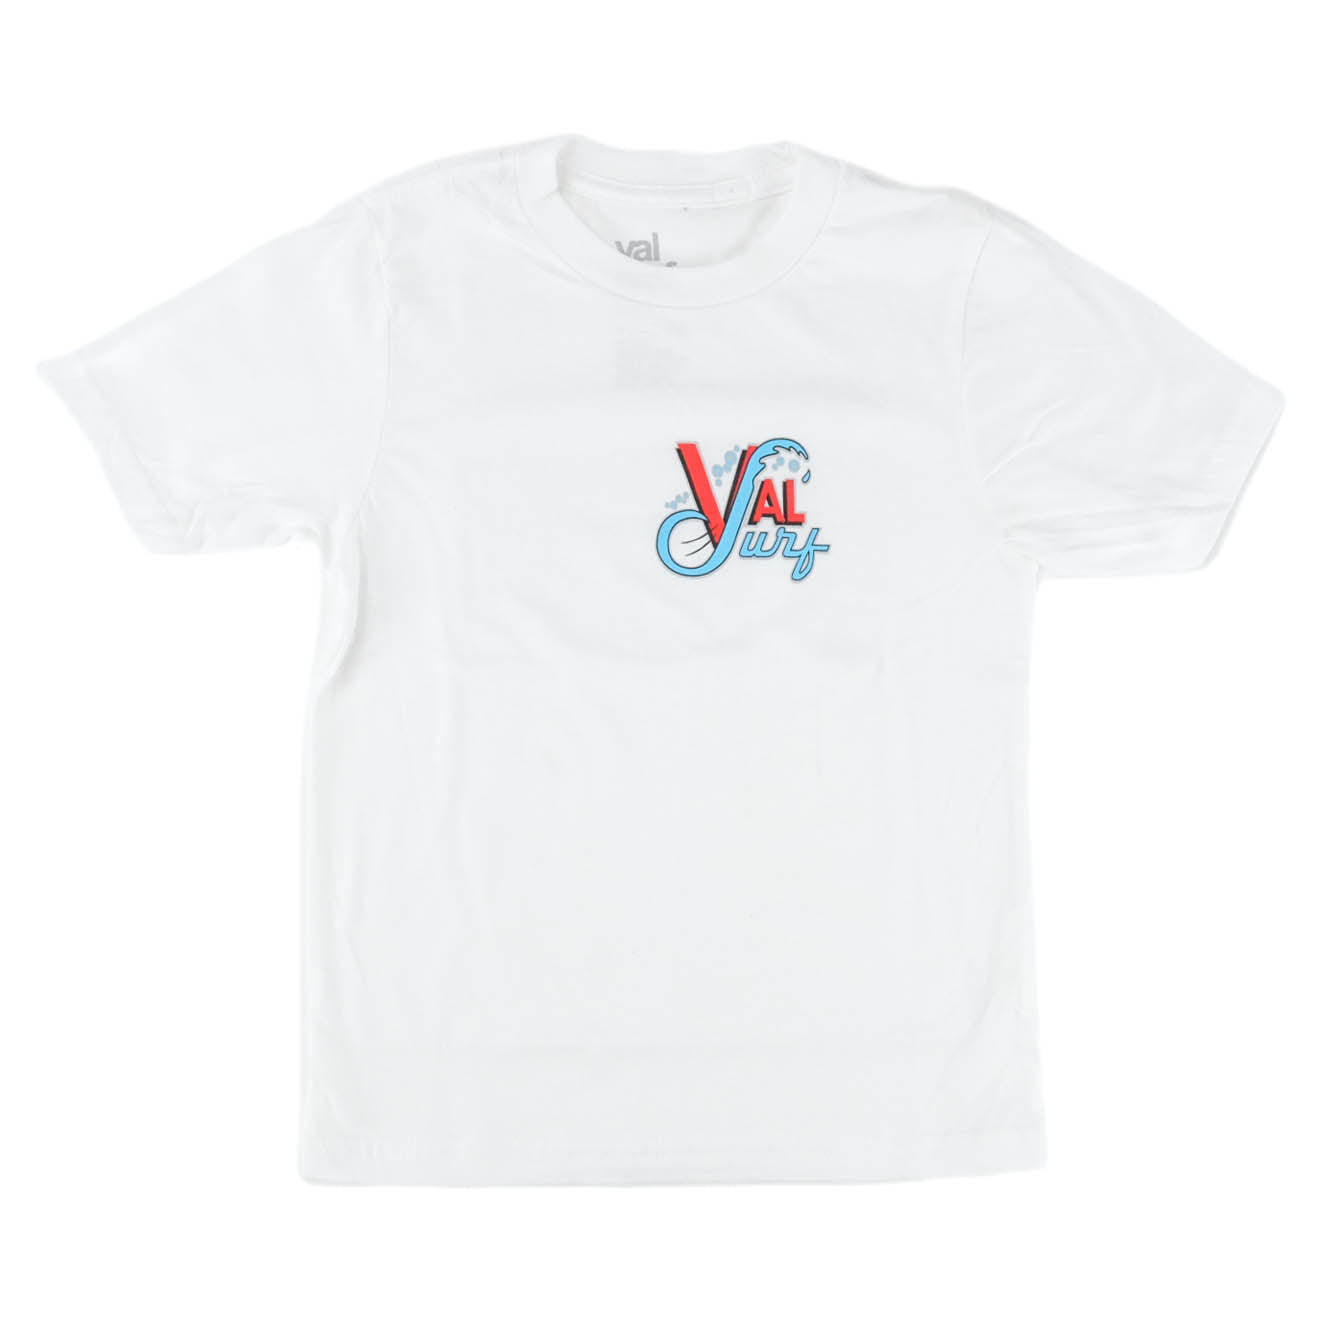 OG Val Surf Tee Youth - White / Full Color Logo